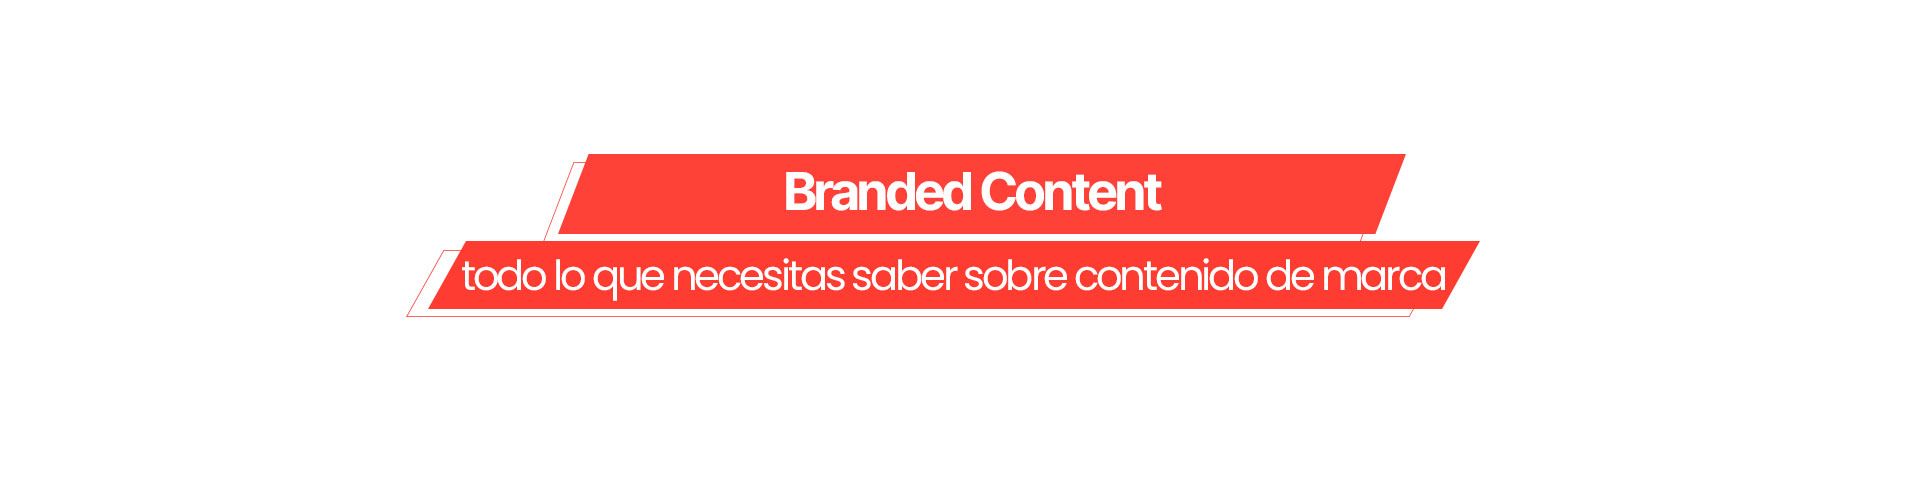 Branded Content: todo lo que necesitas saber sobre contenido de marca